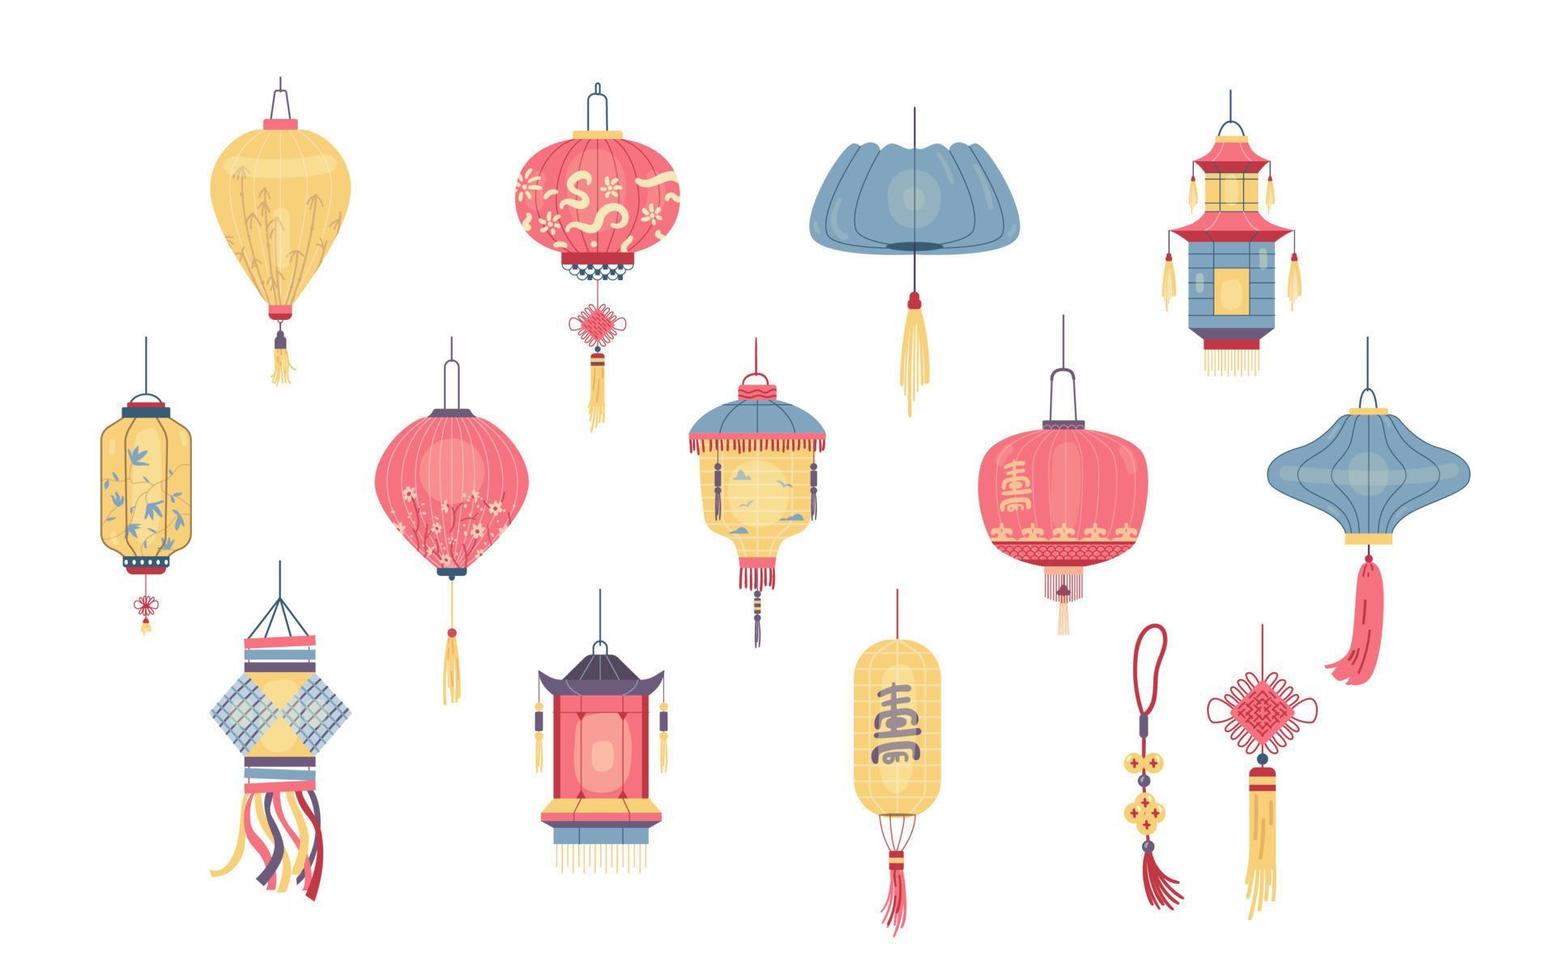 kleurrijk overladen Chinese lantaarns vector illustraties set. Aziatisch lantaarns van verschillend vormen verzameling.